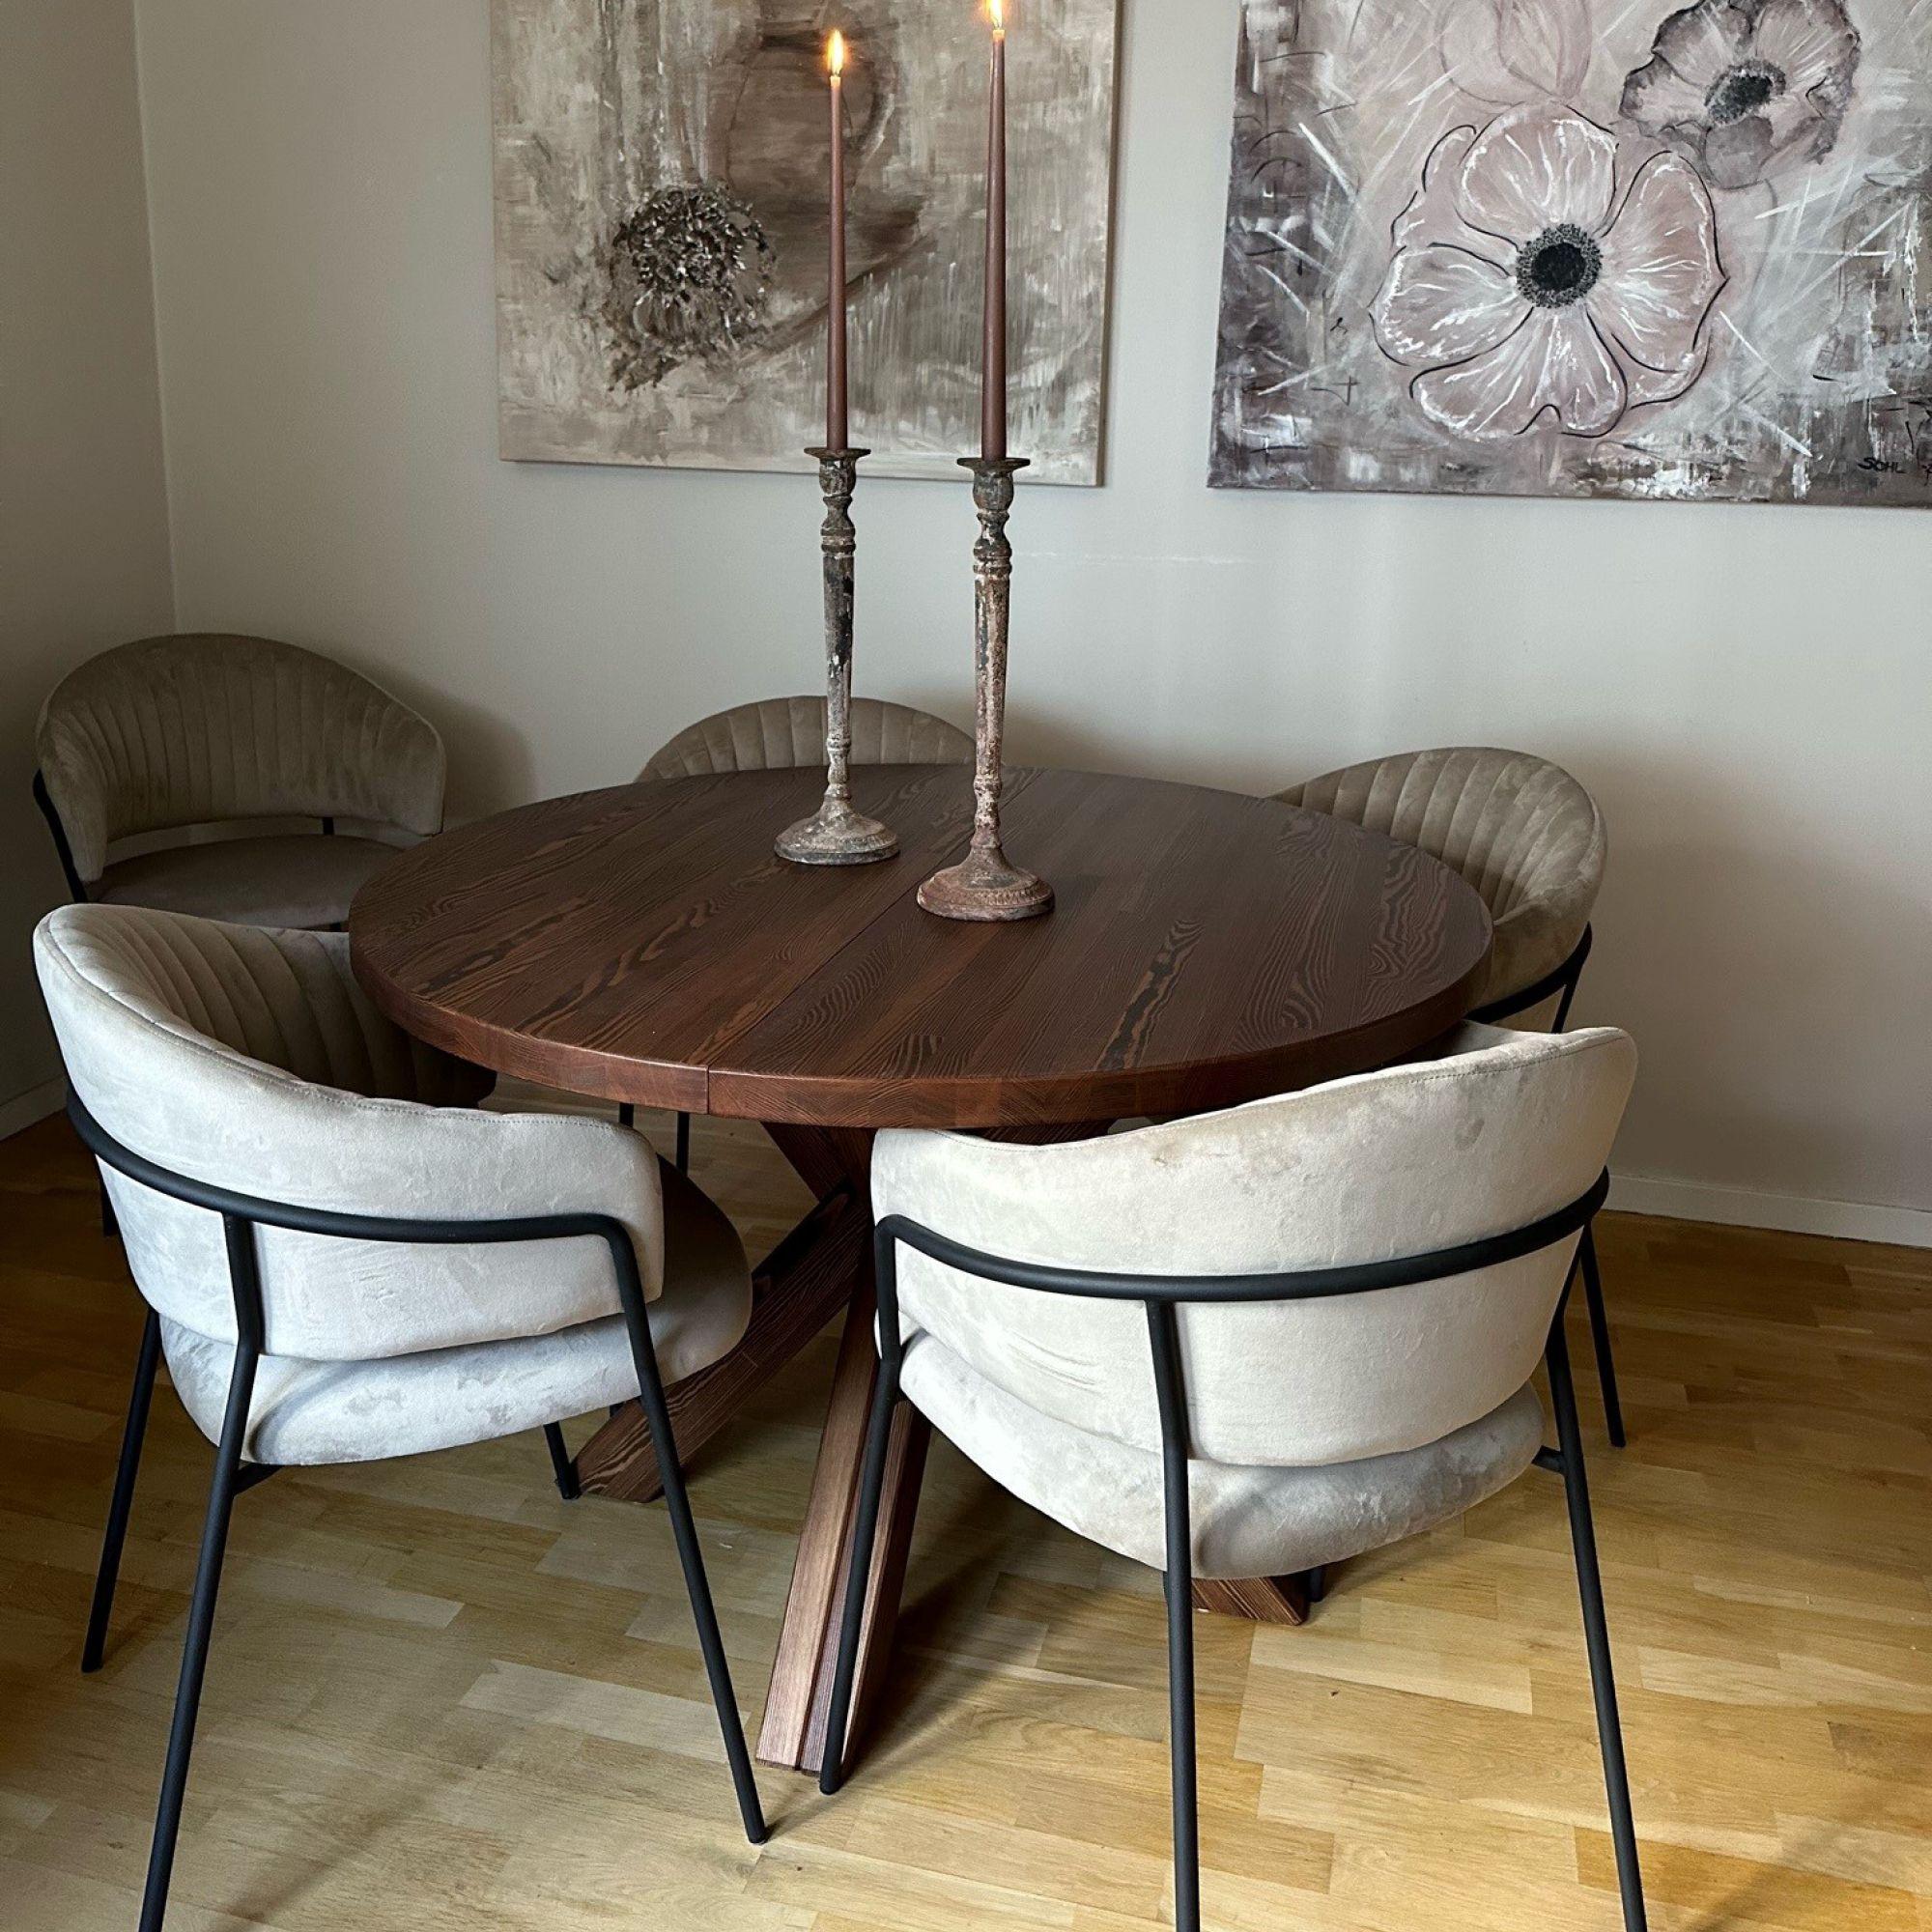 Brunt matbord med stolar dekorerad med ljusstakar